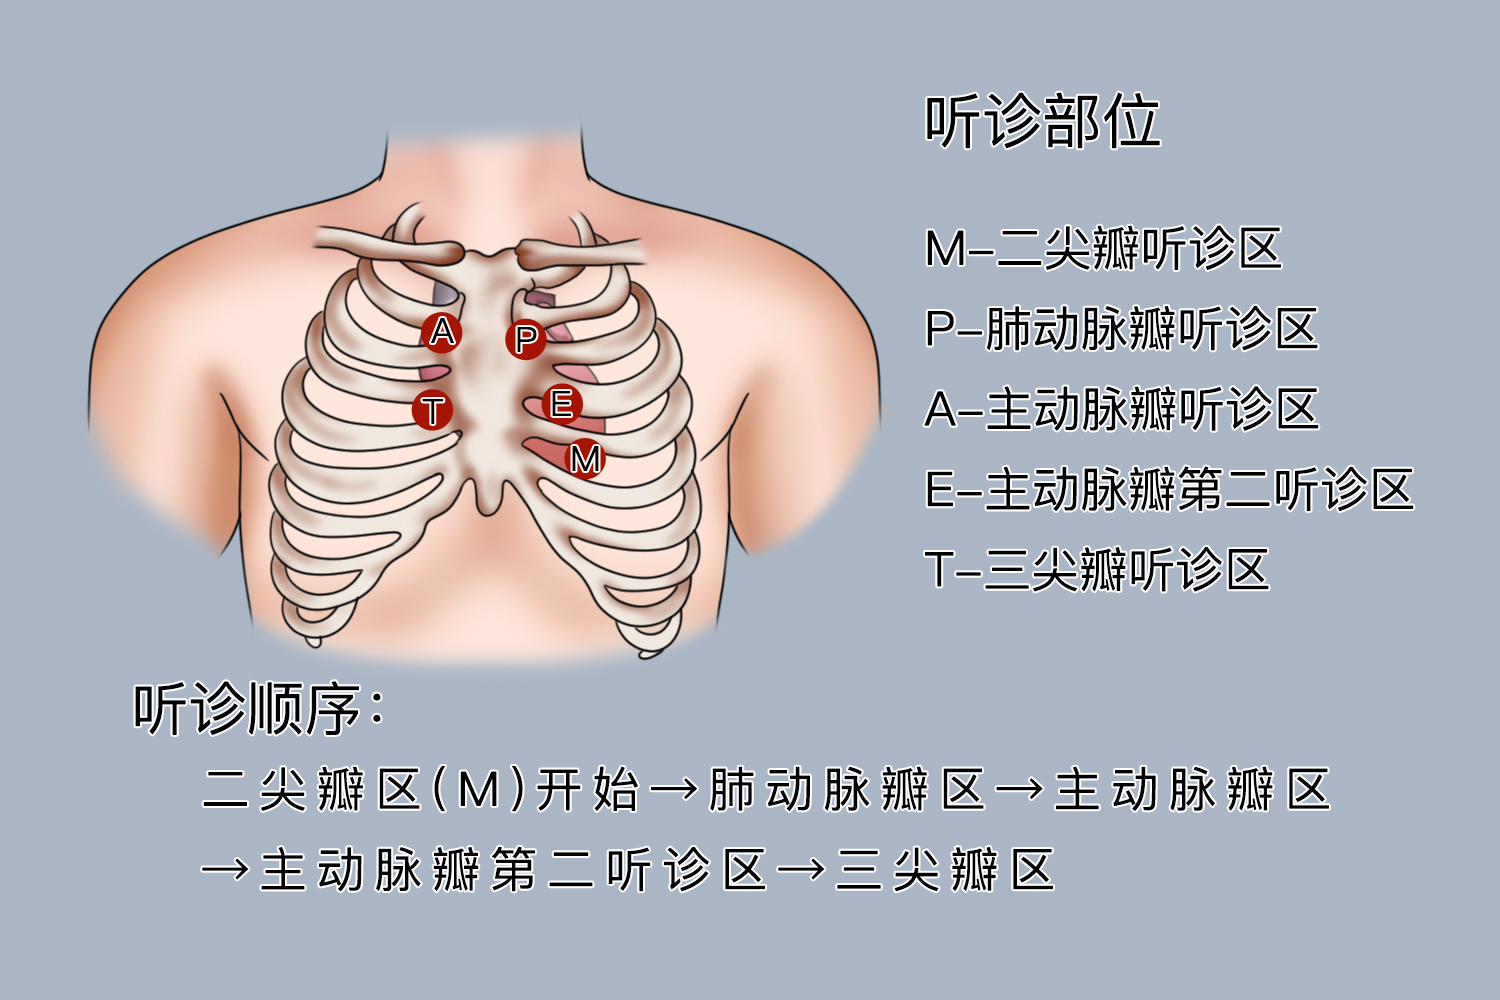 肺部听诊6个部位图片